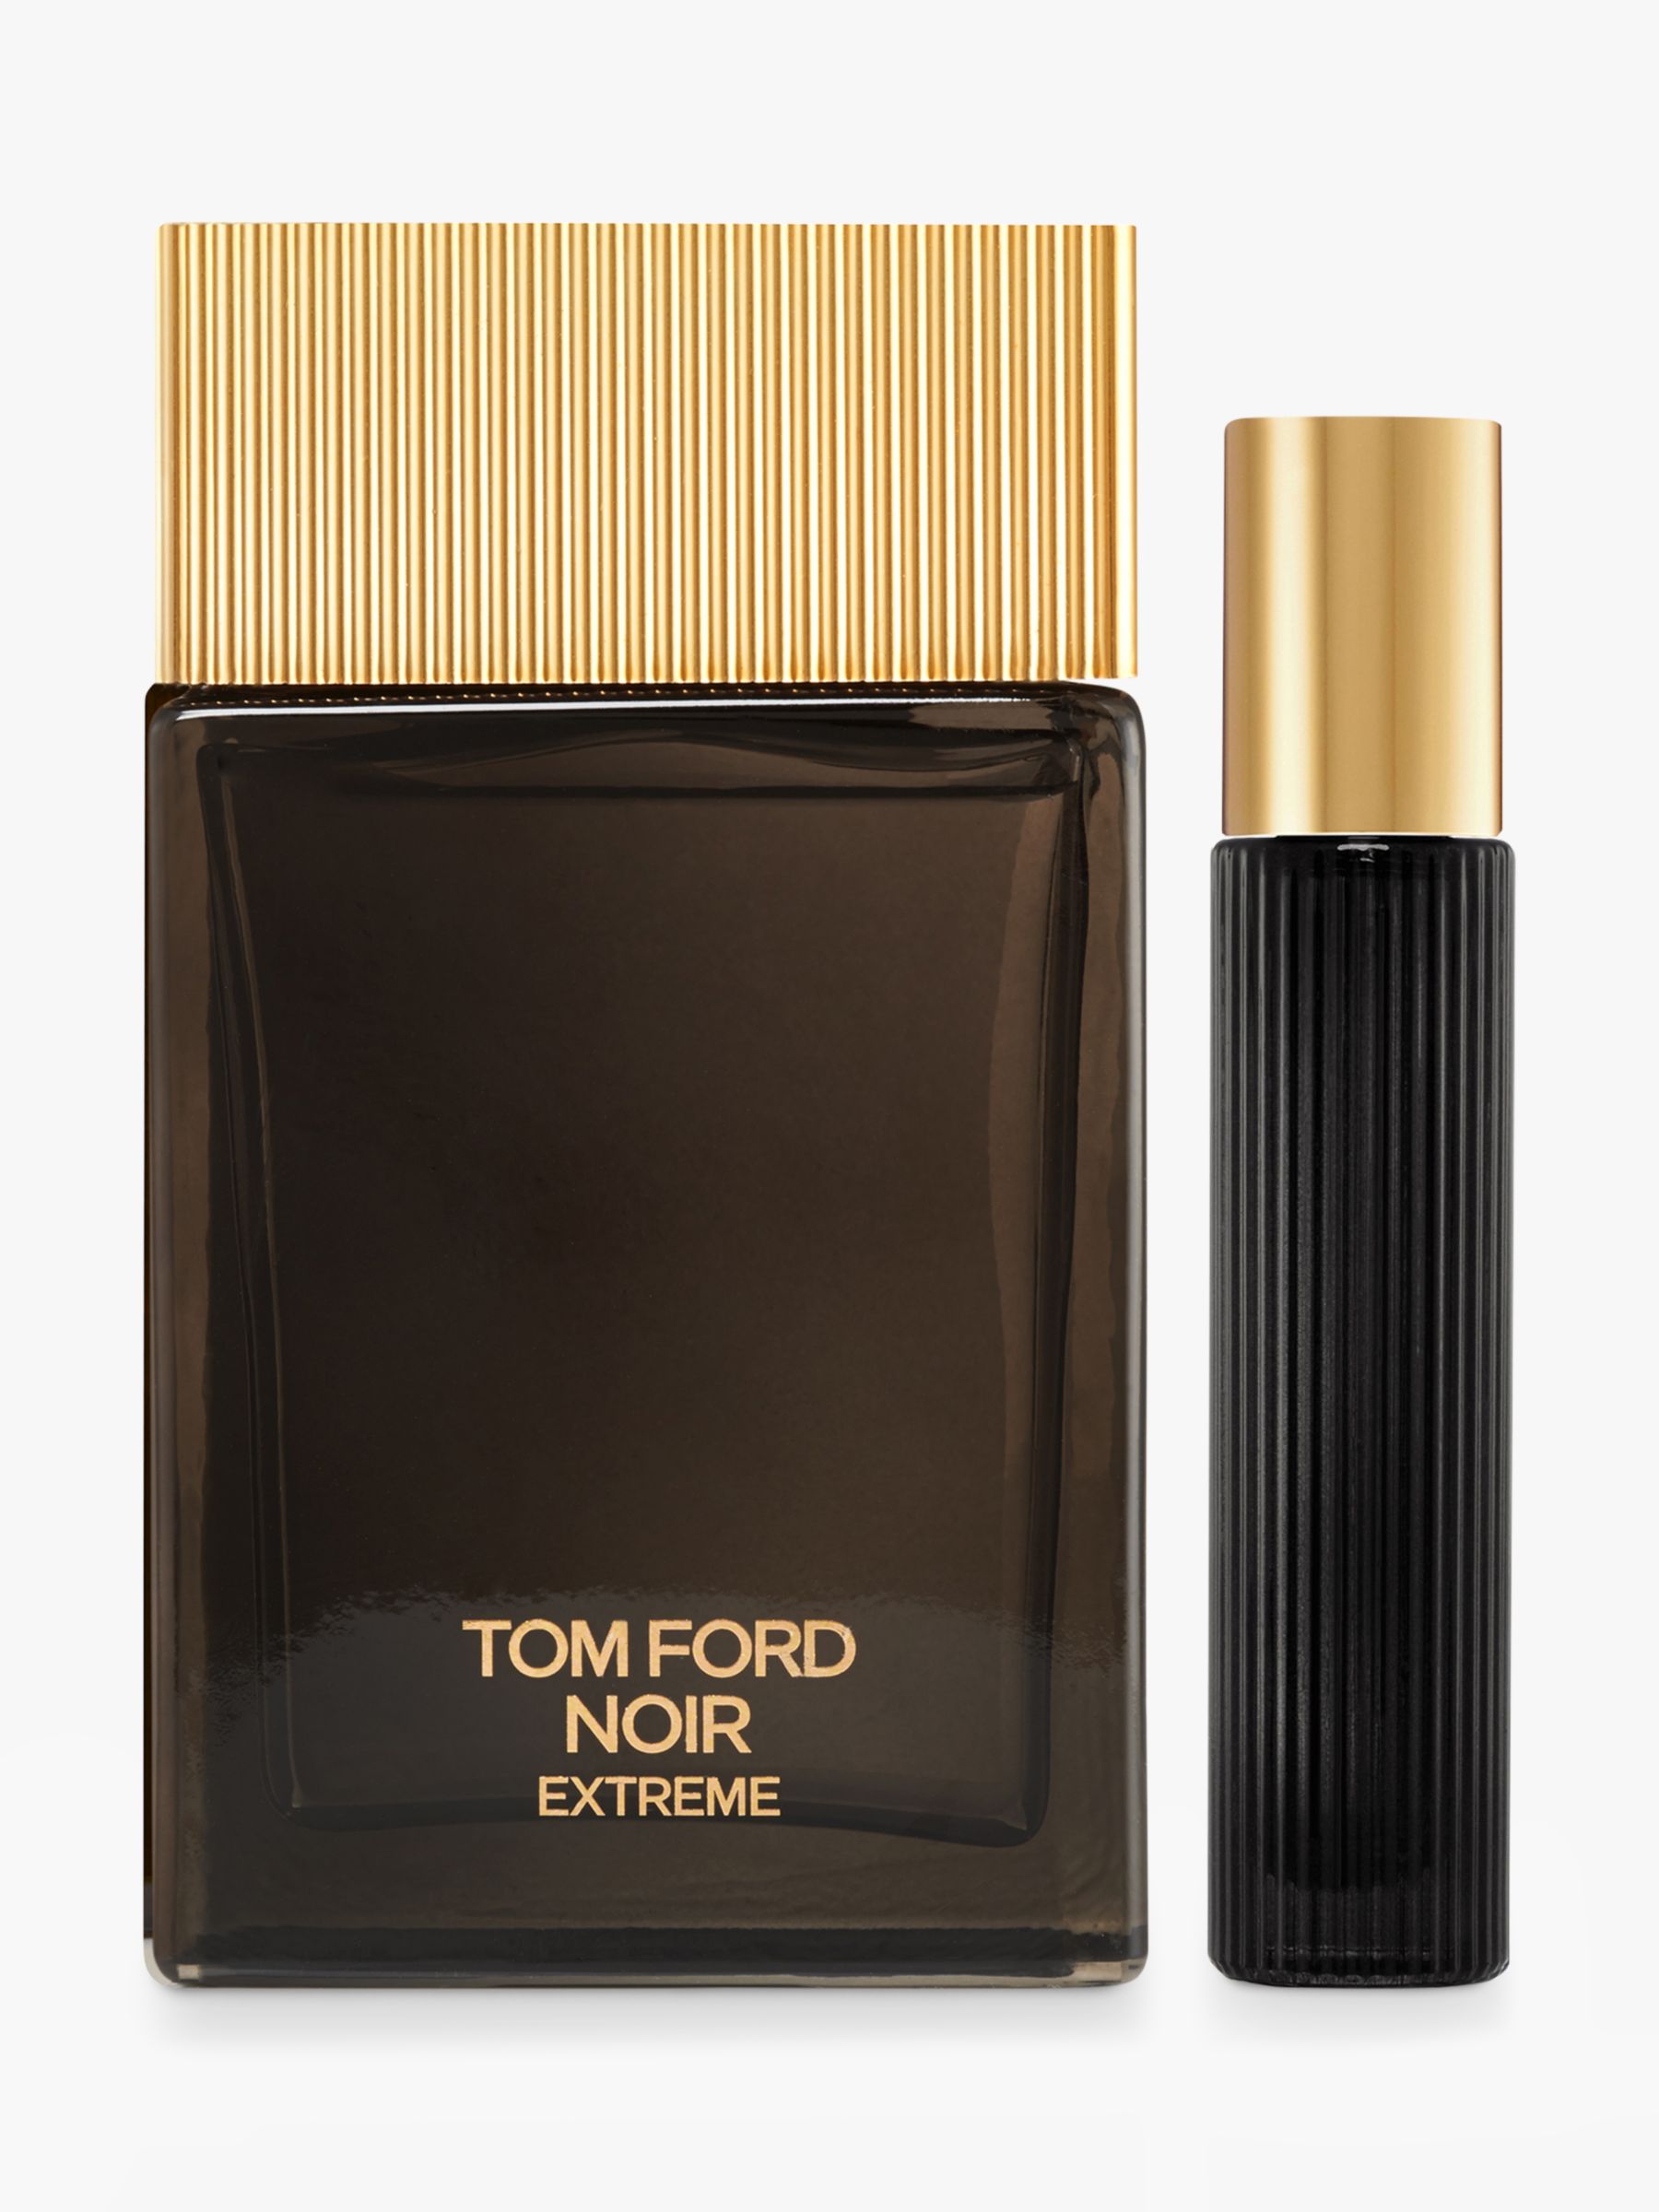 TOM FORD Noir Extreme Collection 100ml Eau de Parfum Gift Set